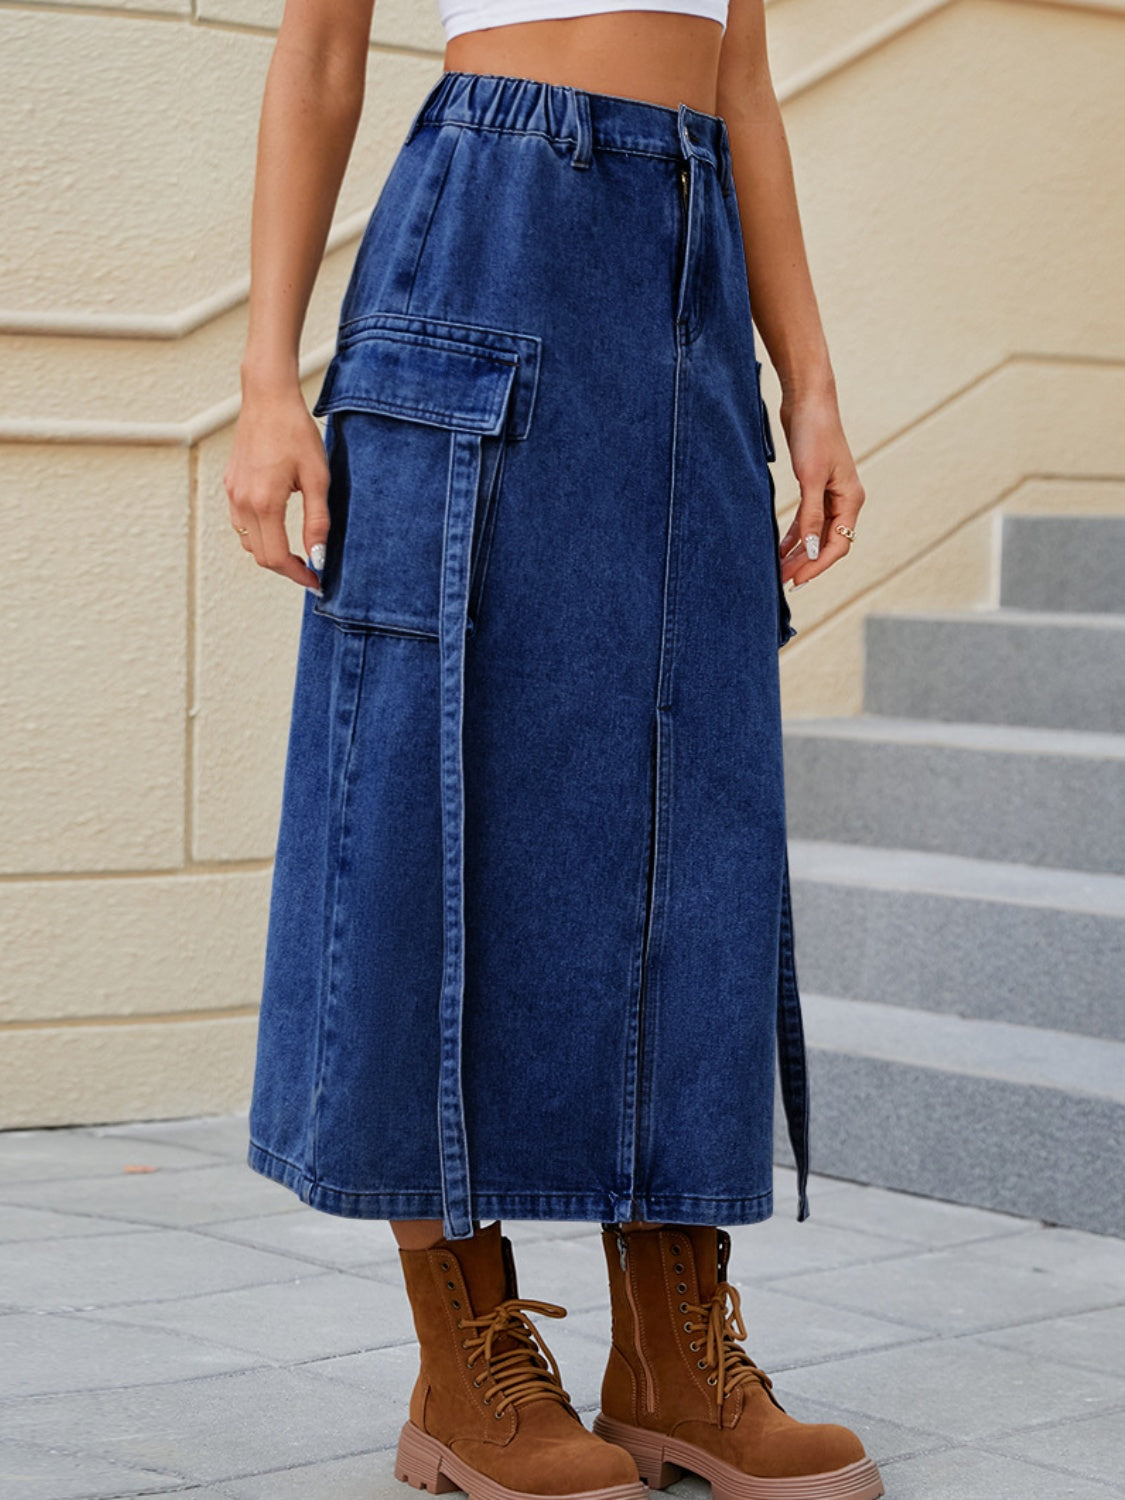 Denim Skirt With Pockets Feminine Slit Pocketed High Waist Jean Skirt KESLEY